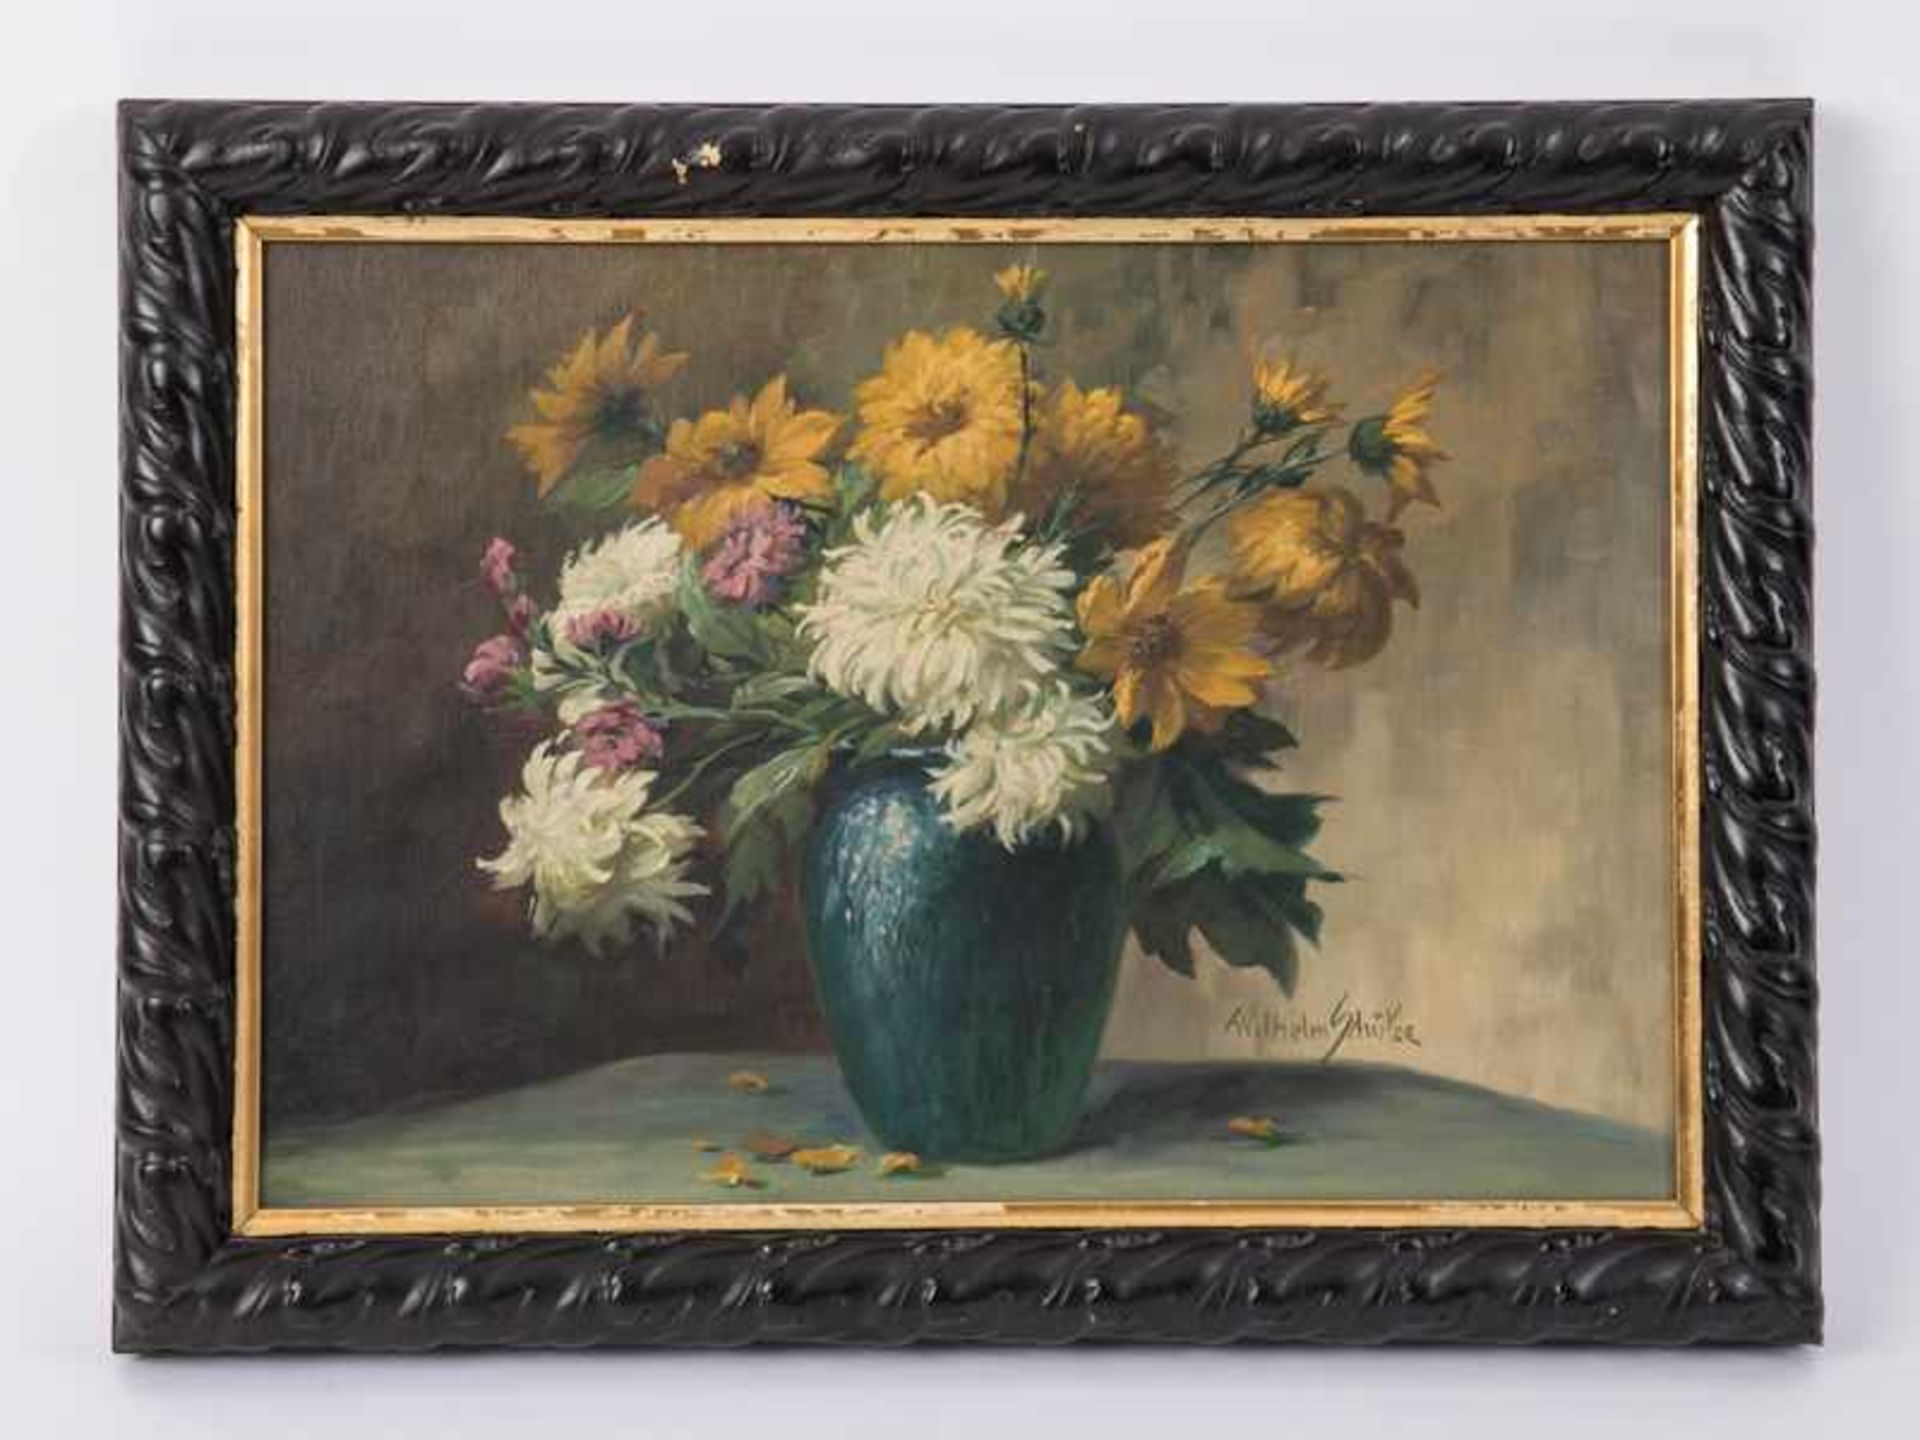 Schütze, Wilhelm (1840 - 1898). Öl auf Leinwand, Blumenstilleben; vor einem effektvoll halb